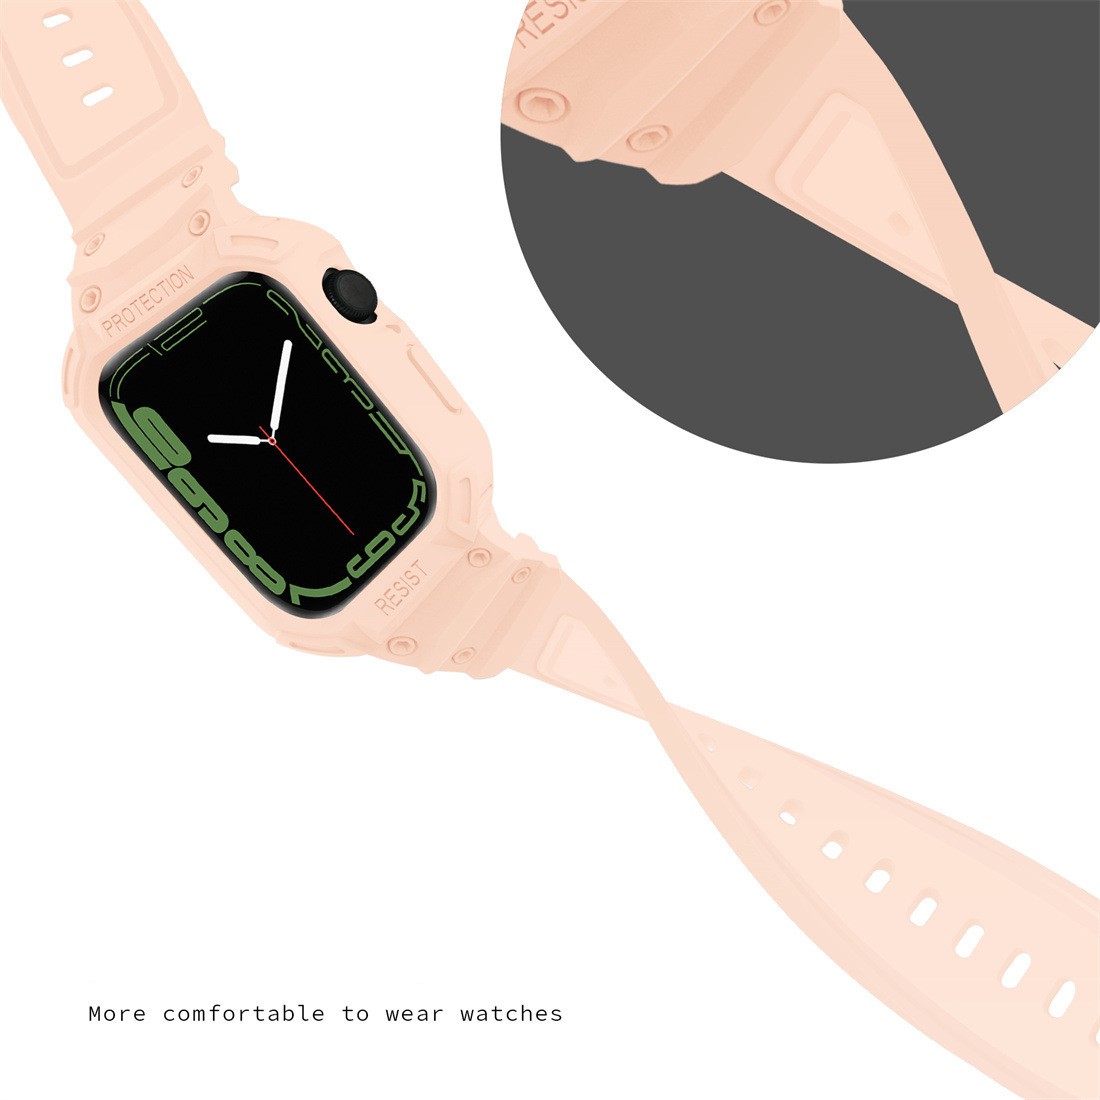 Ốp Case Kèm Dây Đeo Kiểu Gshock Kai dành cho Đồng Hồ Apple Watch- Hàng Chính Hãng